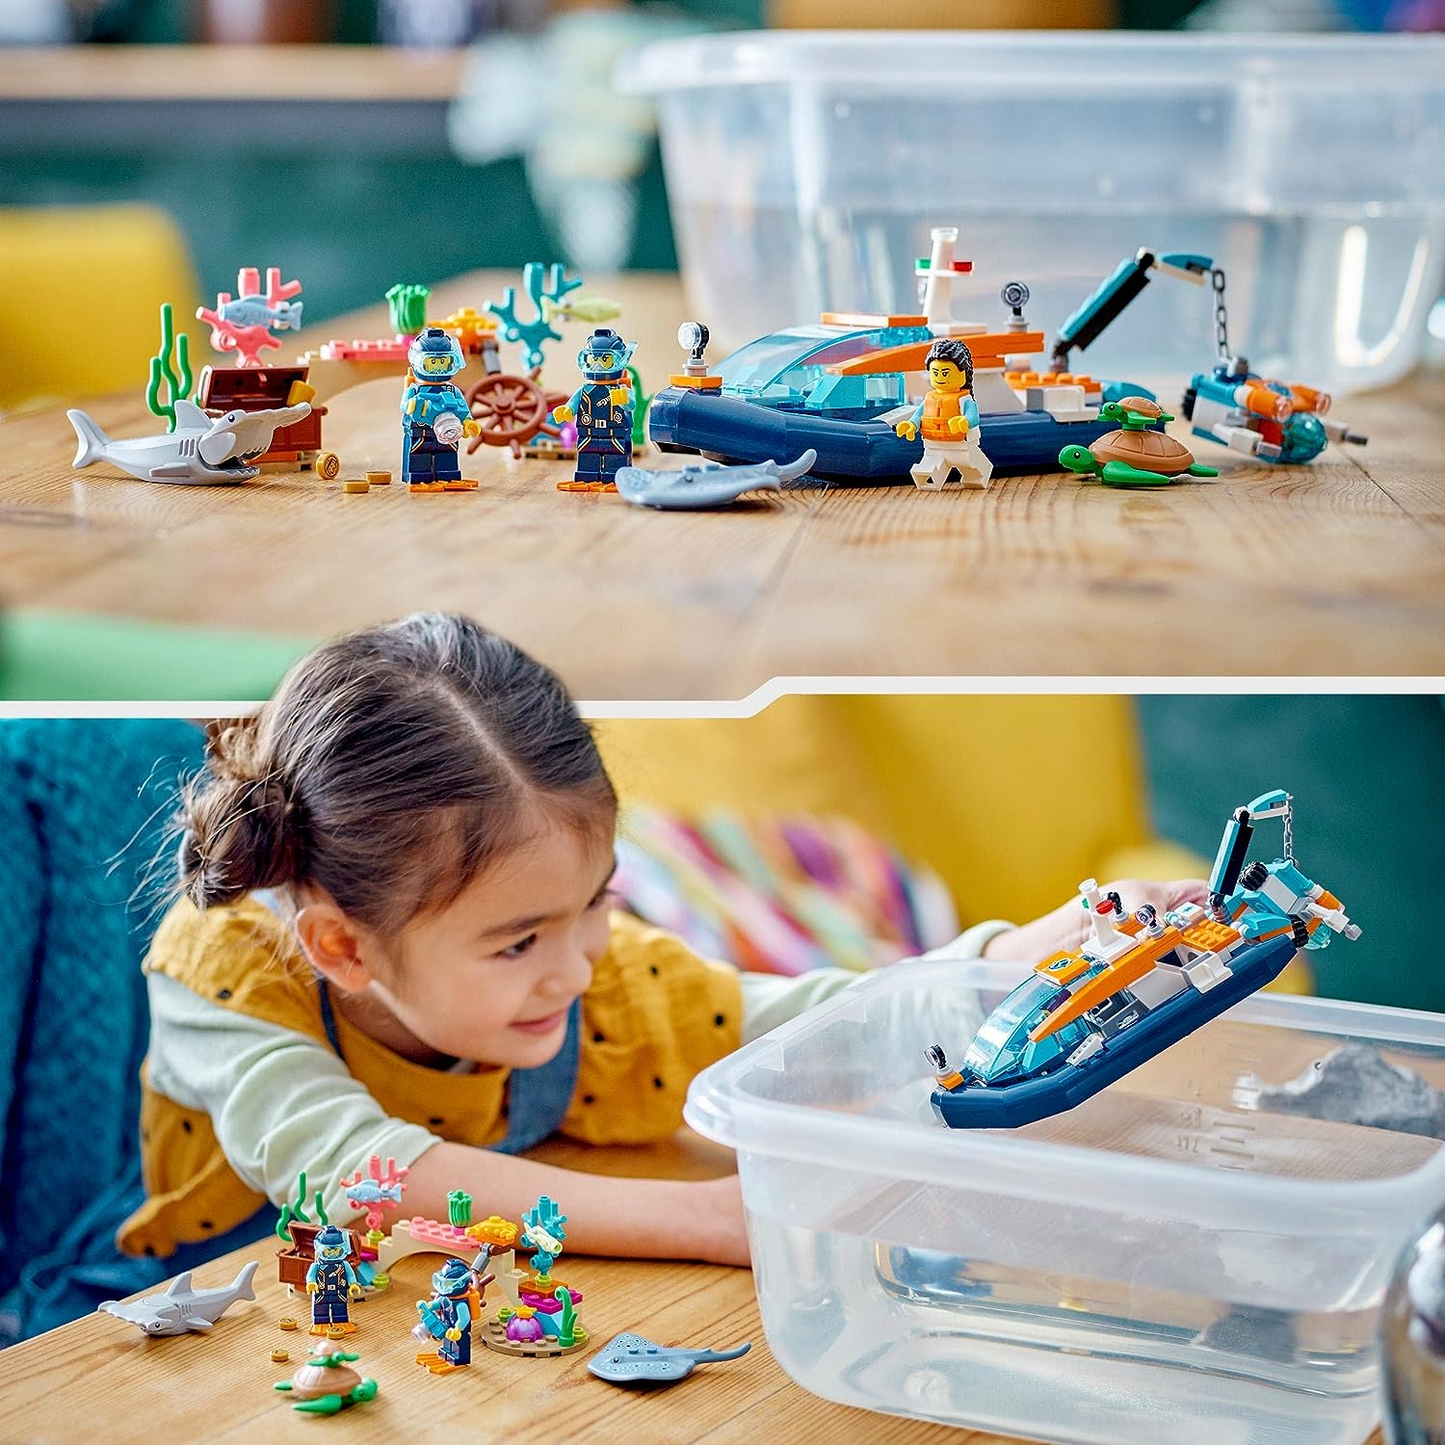 LEGO 60377 Brinquedo de Barco de Mergulho City Explorer com Mini-Submarino, Tubarão, Caranguejo, Tartaruga Arraia e Figuras de Animais Marinhos, Conjunto de Mergulho Subaquático, para Crianças de 5+